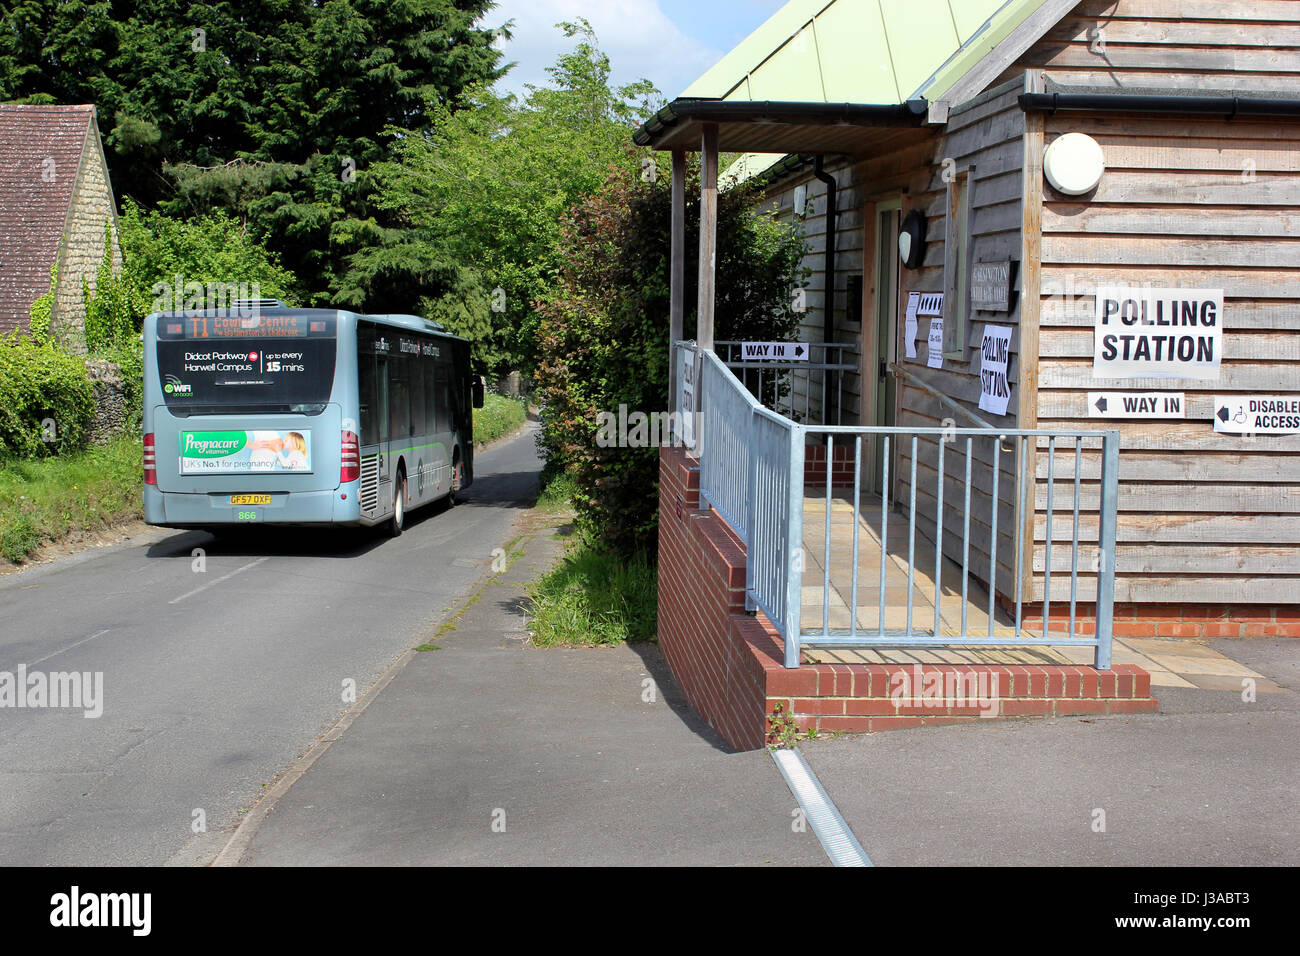 Laissez-passer d'autobus local Garsington Village Hall de scrutin pour l'élection du conseil local Oxfordshire Banque D'Images